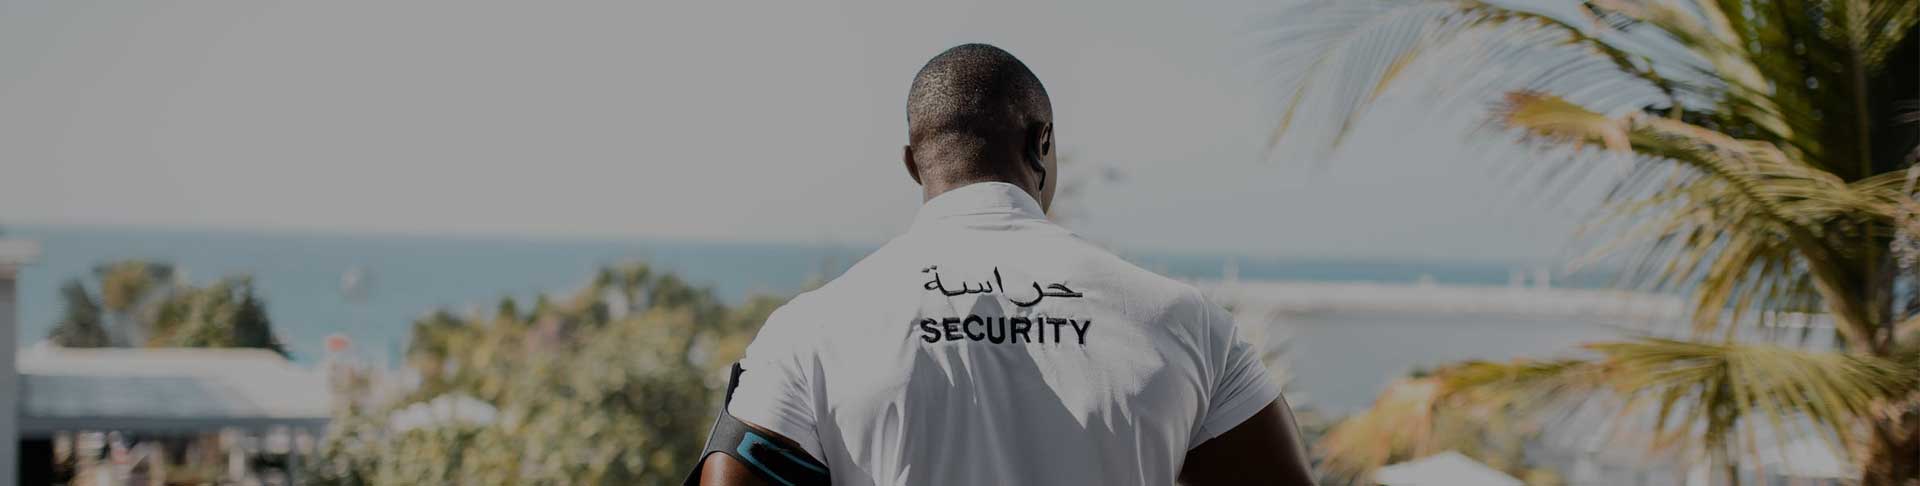 Event Security Services Dubai | Event Security Guards Dubai | Event Security For VIPS